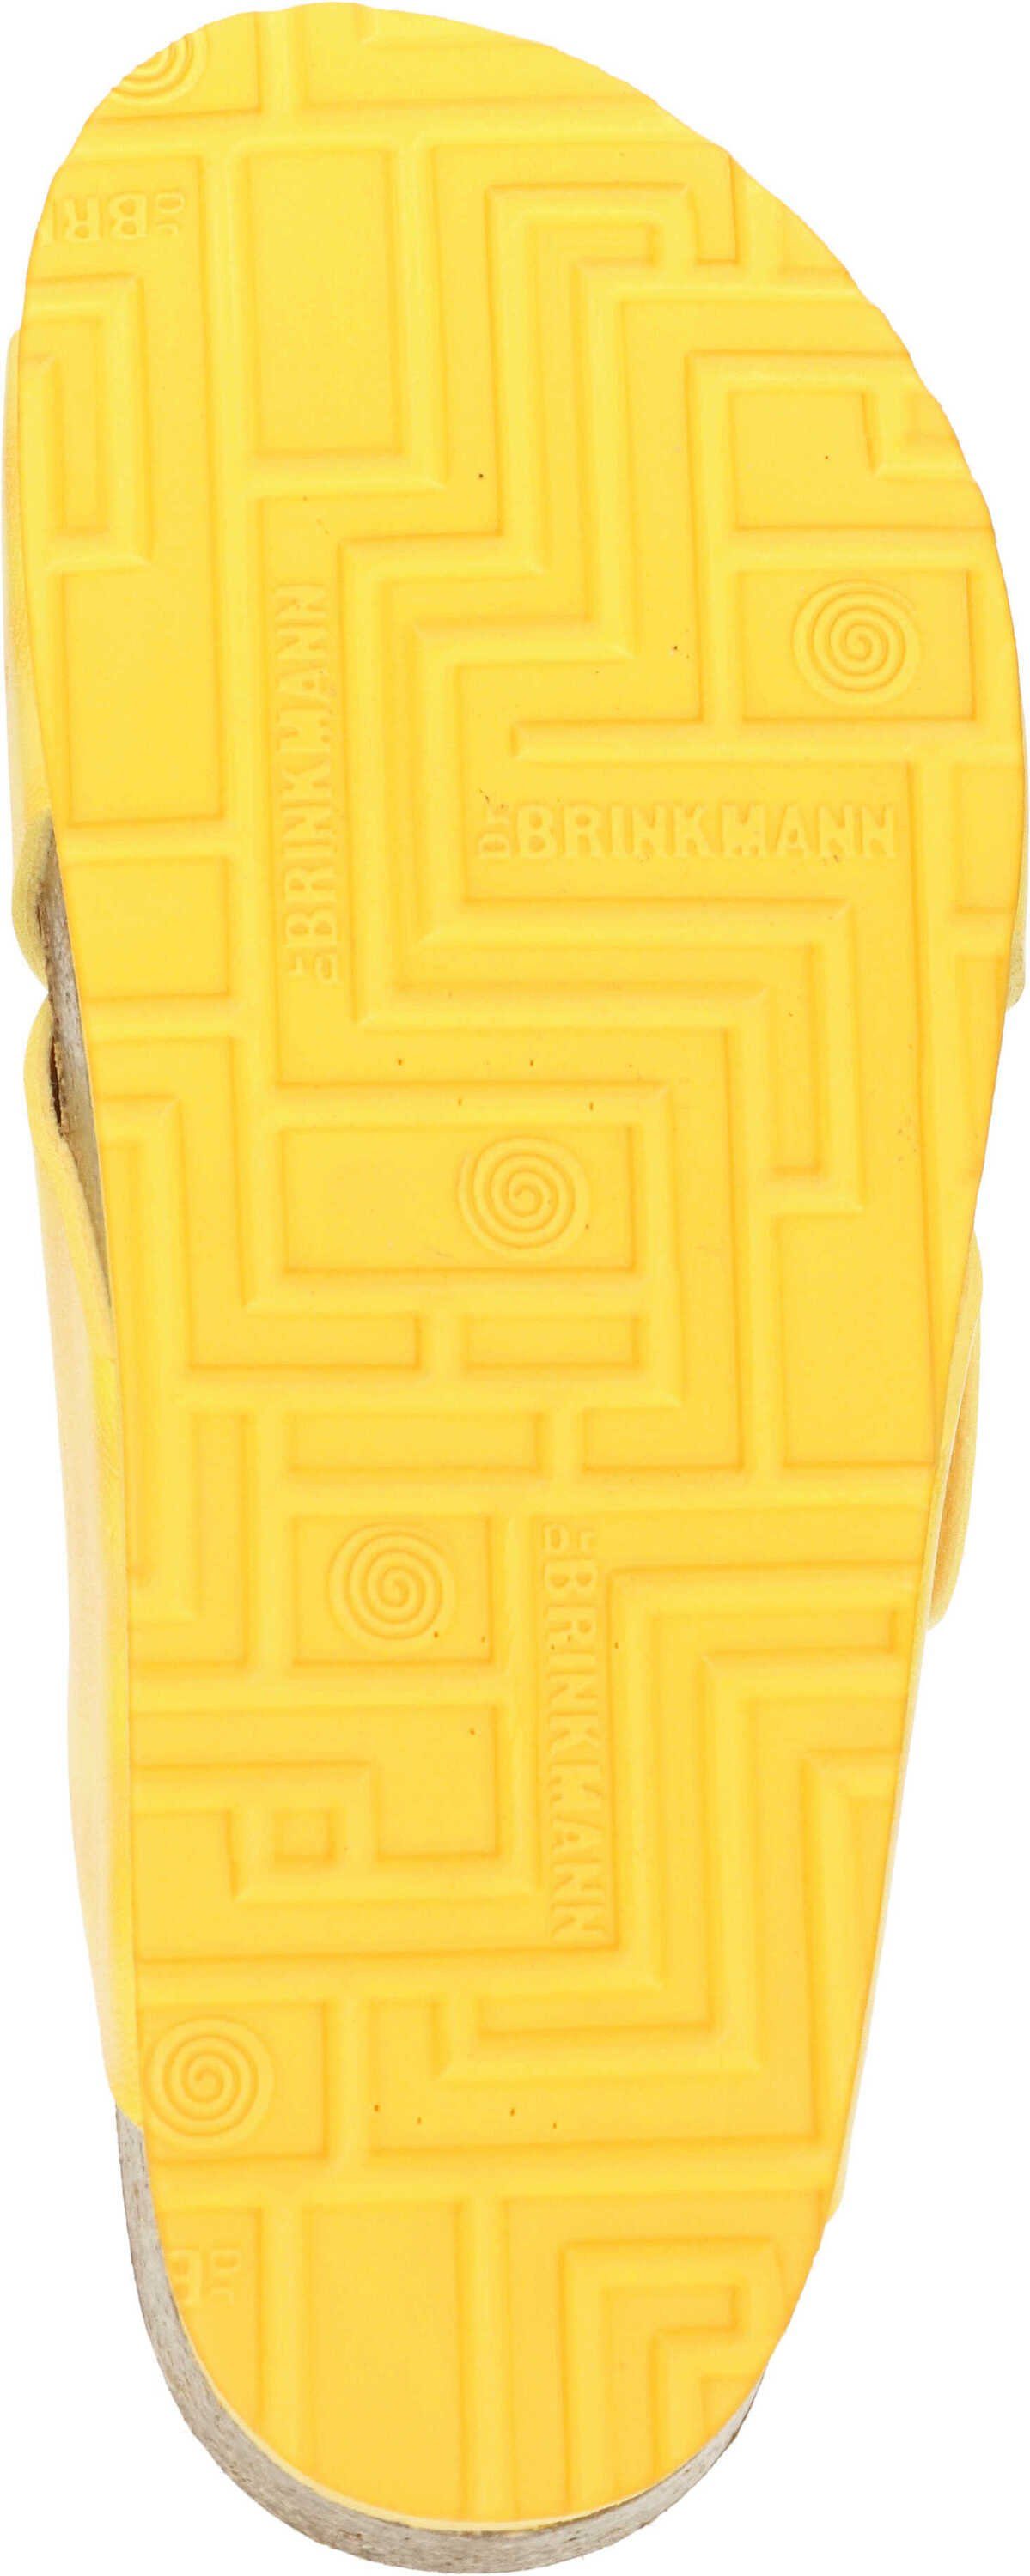 Brinkmann strapazierfähigen Gewebefasern Pantolette aus gelb Dr. Pantoletten